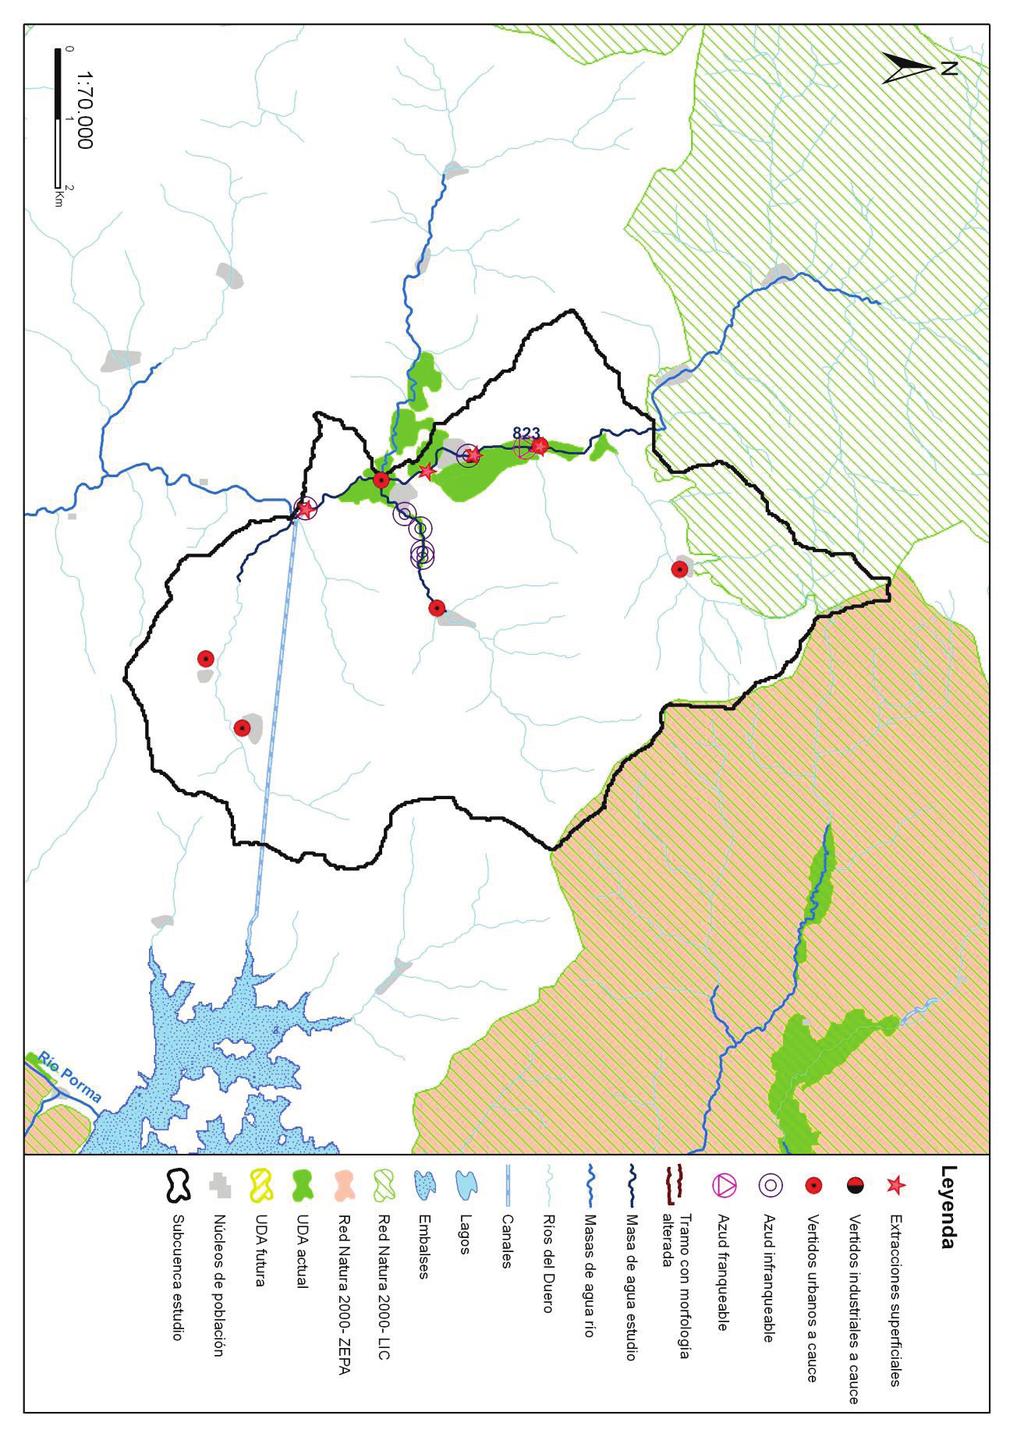 Código (DU-) y nombre: 823 Río Curueño de límite LIC "Montaña Central de León" hasta